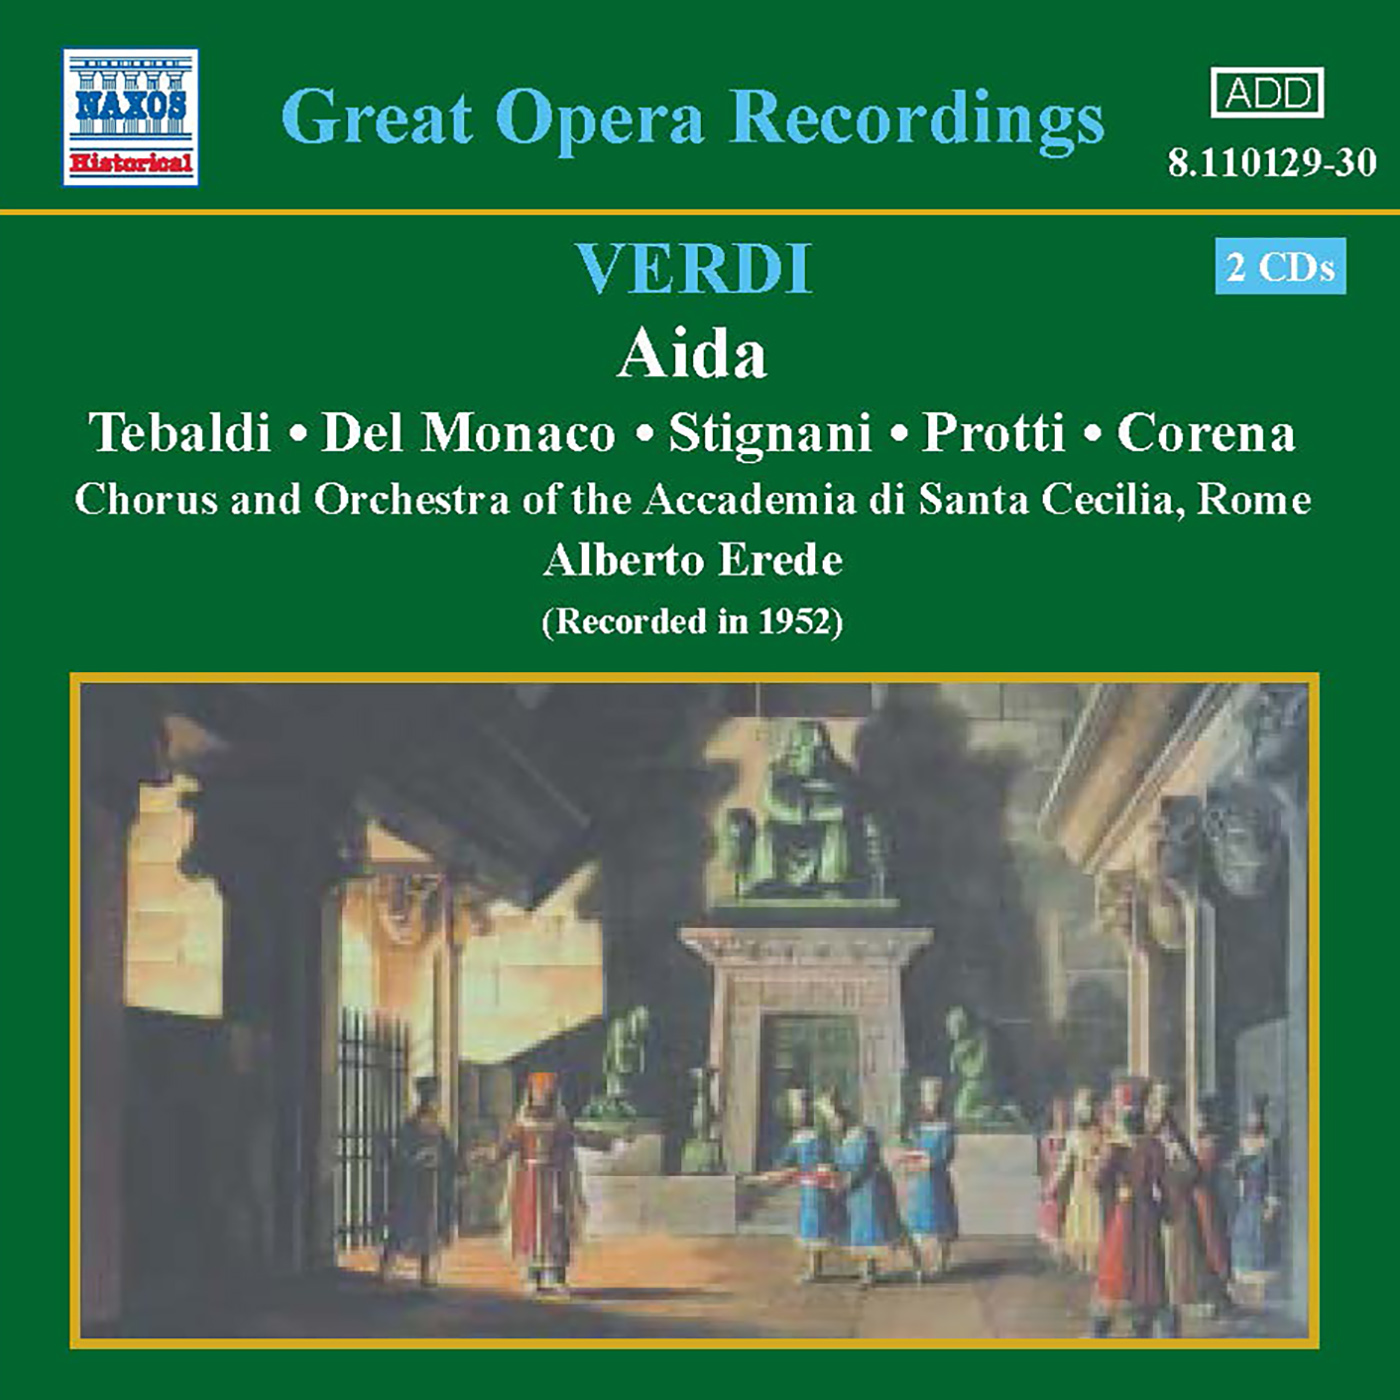 VERDI: Aida (Tebaldi, del Monaco) (1952)